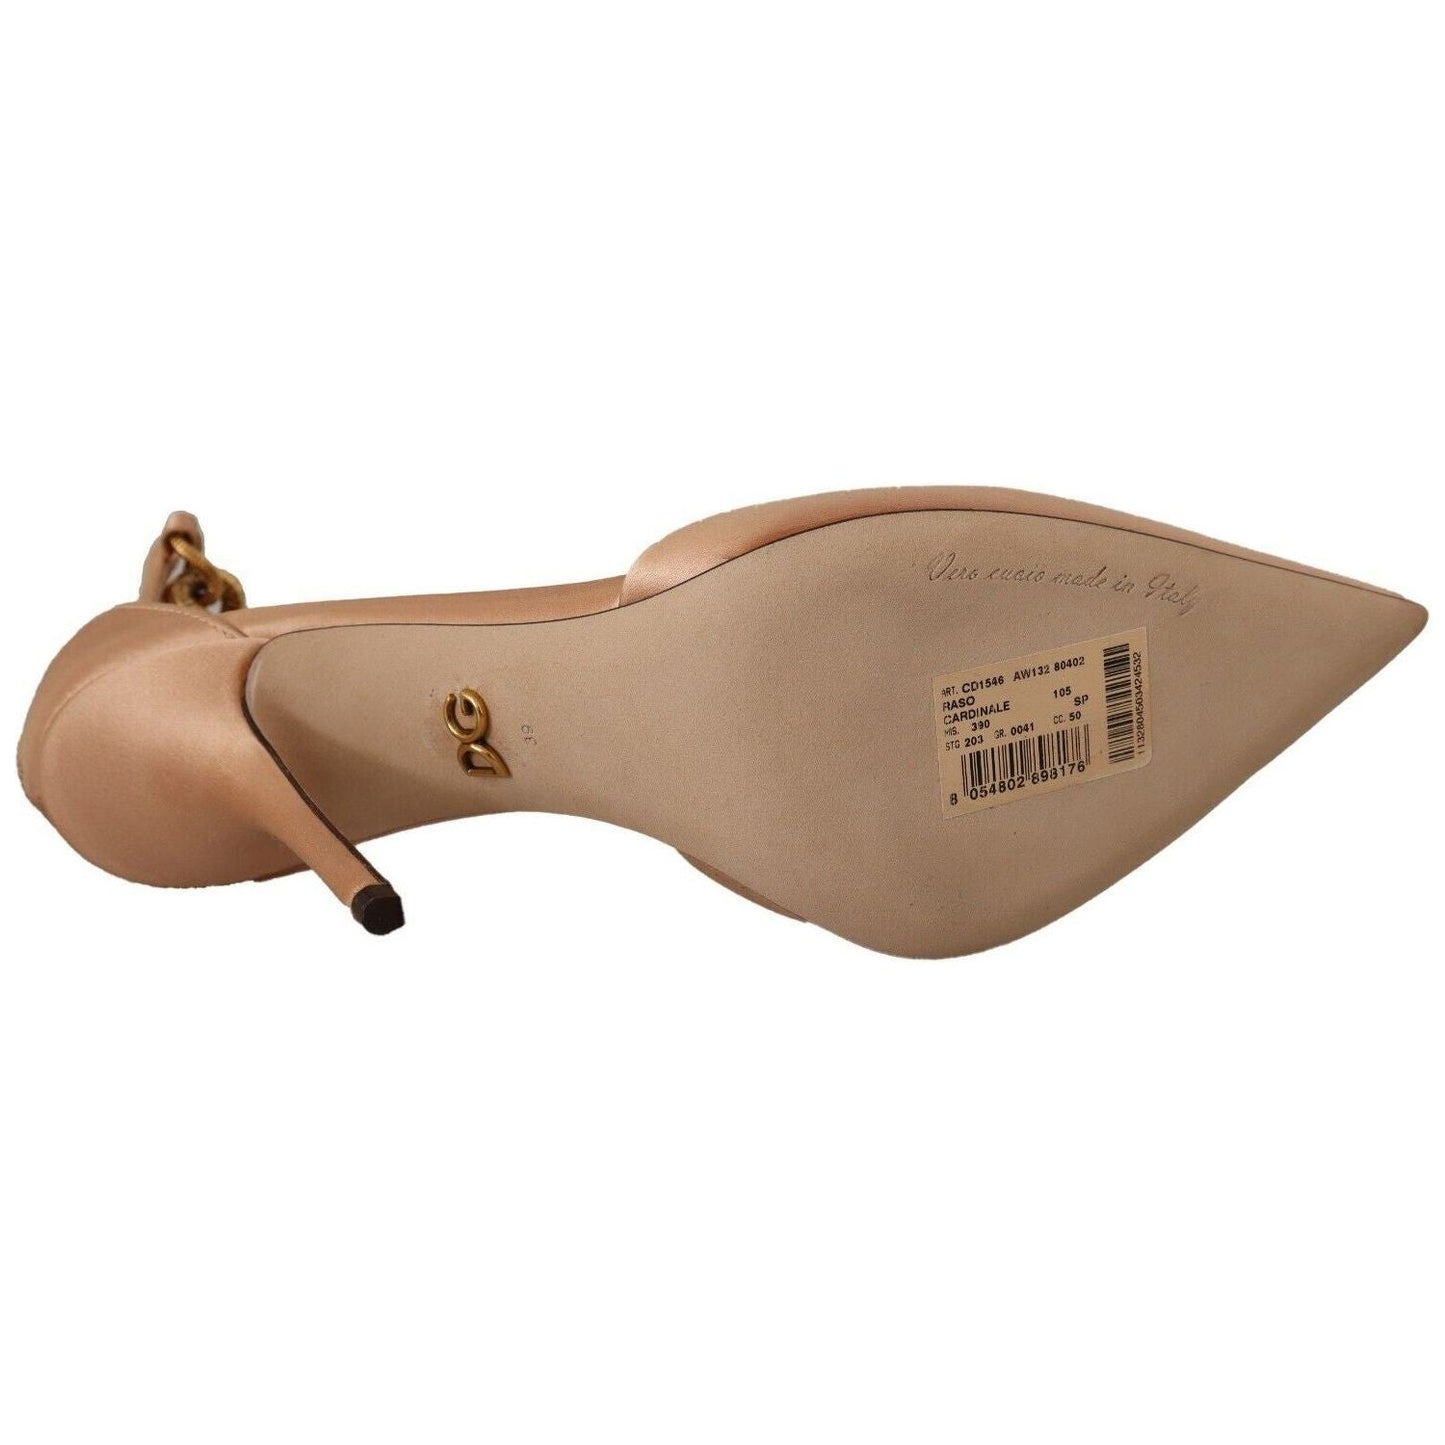 Dolce & Gabbana Elegant Beige Silk Ankle Strap Pumps beige-ankle-chain-strap-high-heels-pumps-shoes s-l1600-5-78-b372a7cd-0dc_e0f8fe66-4213-45db-983a-4c40fc5ed3ca.jpg